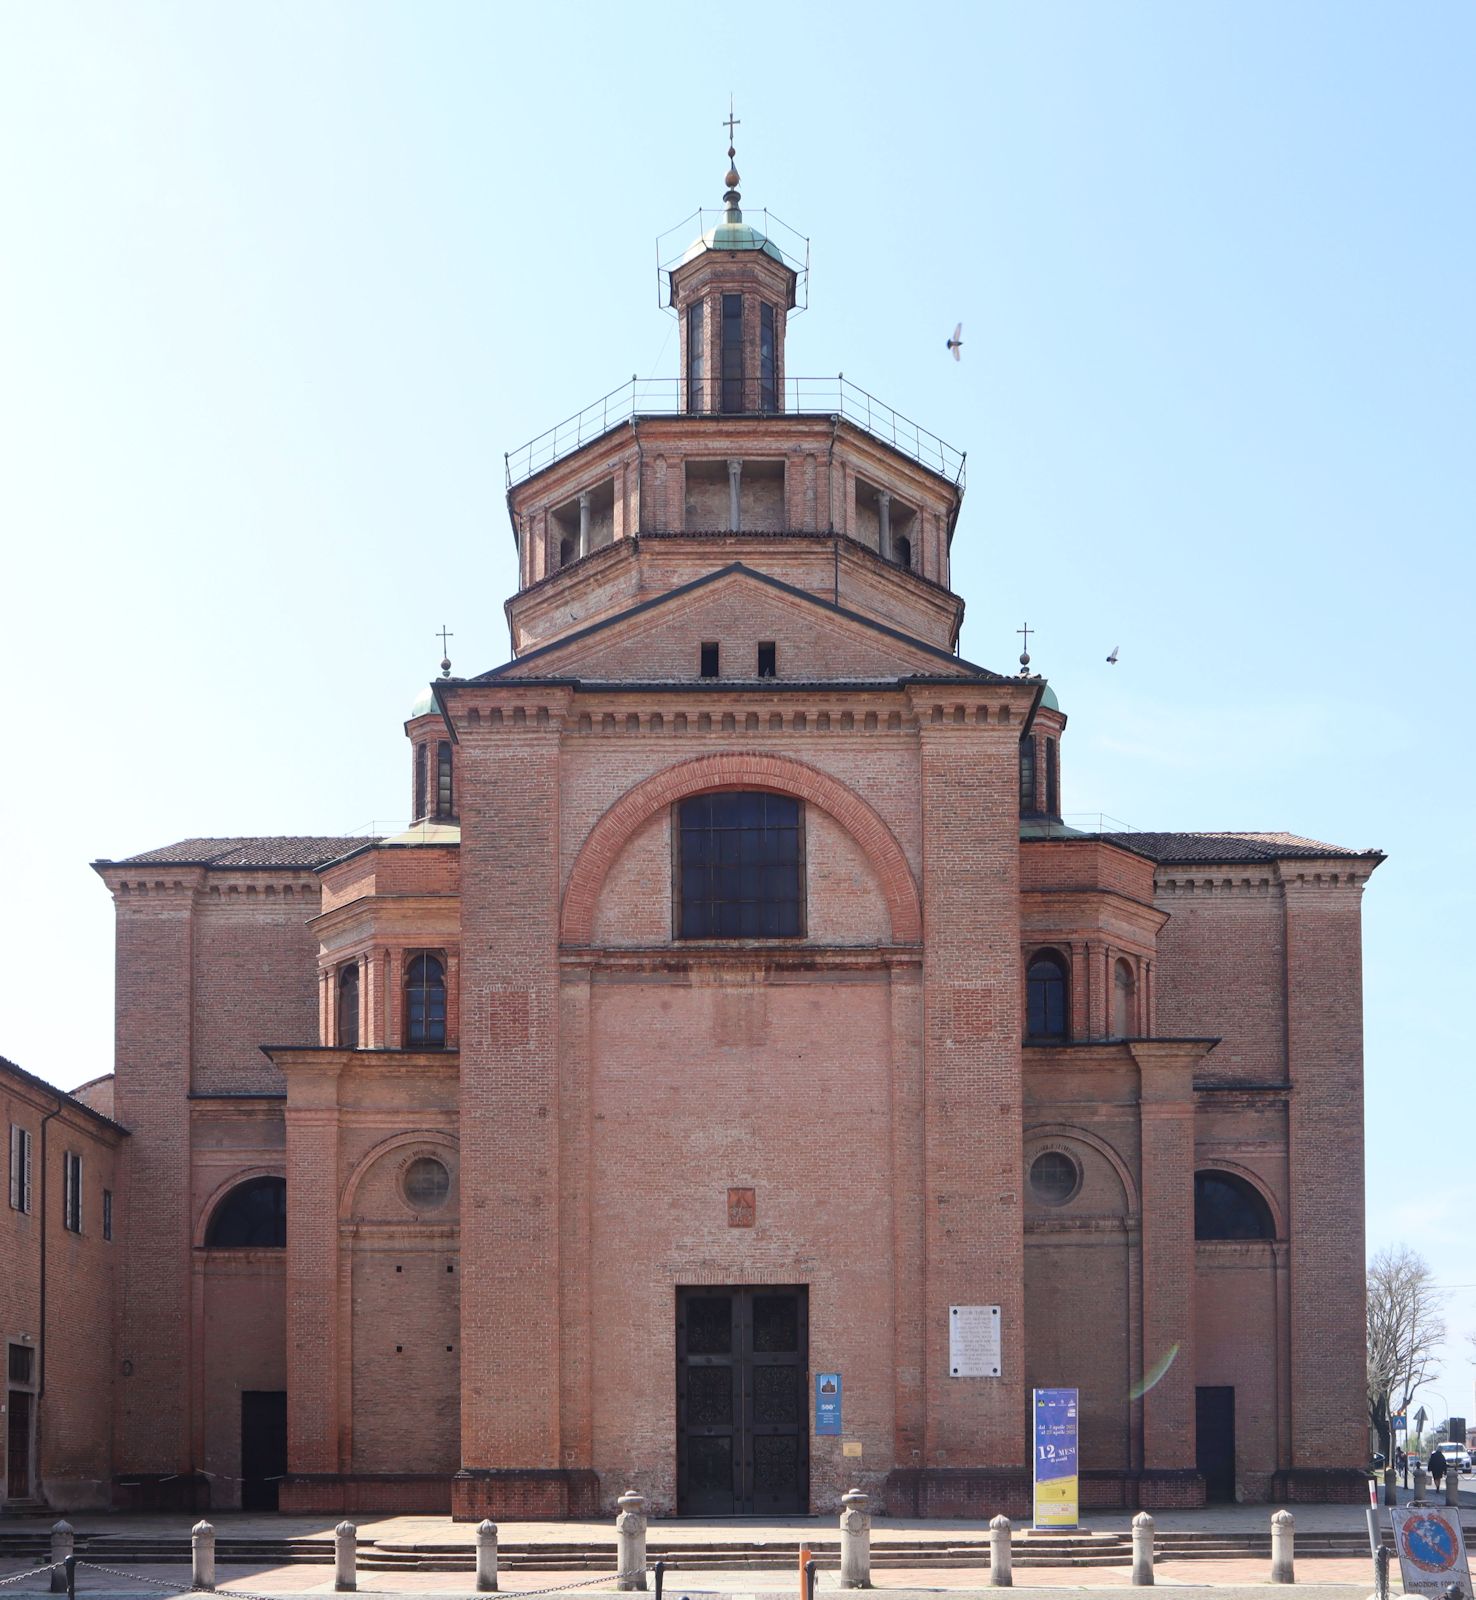 Kirche Madonna di Campagna in Piacenza